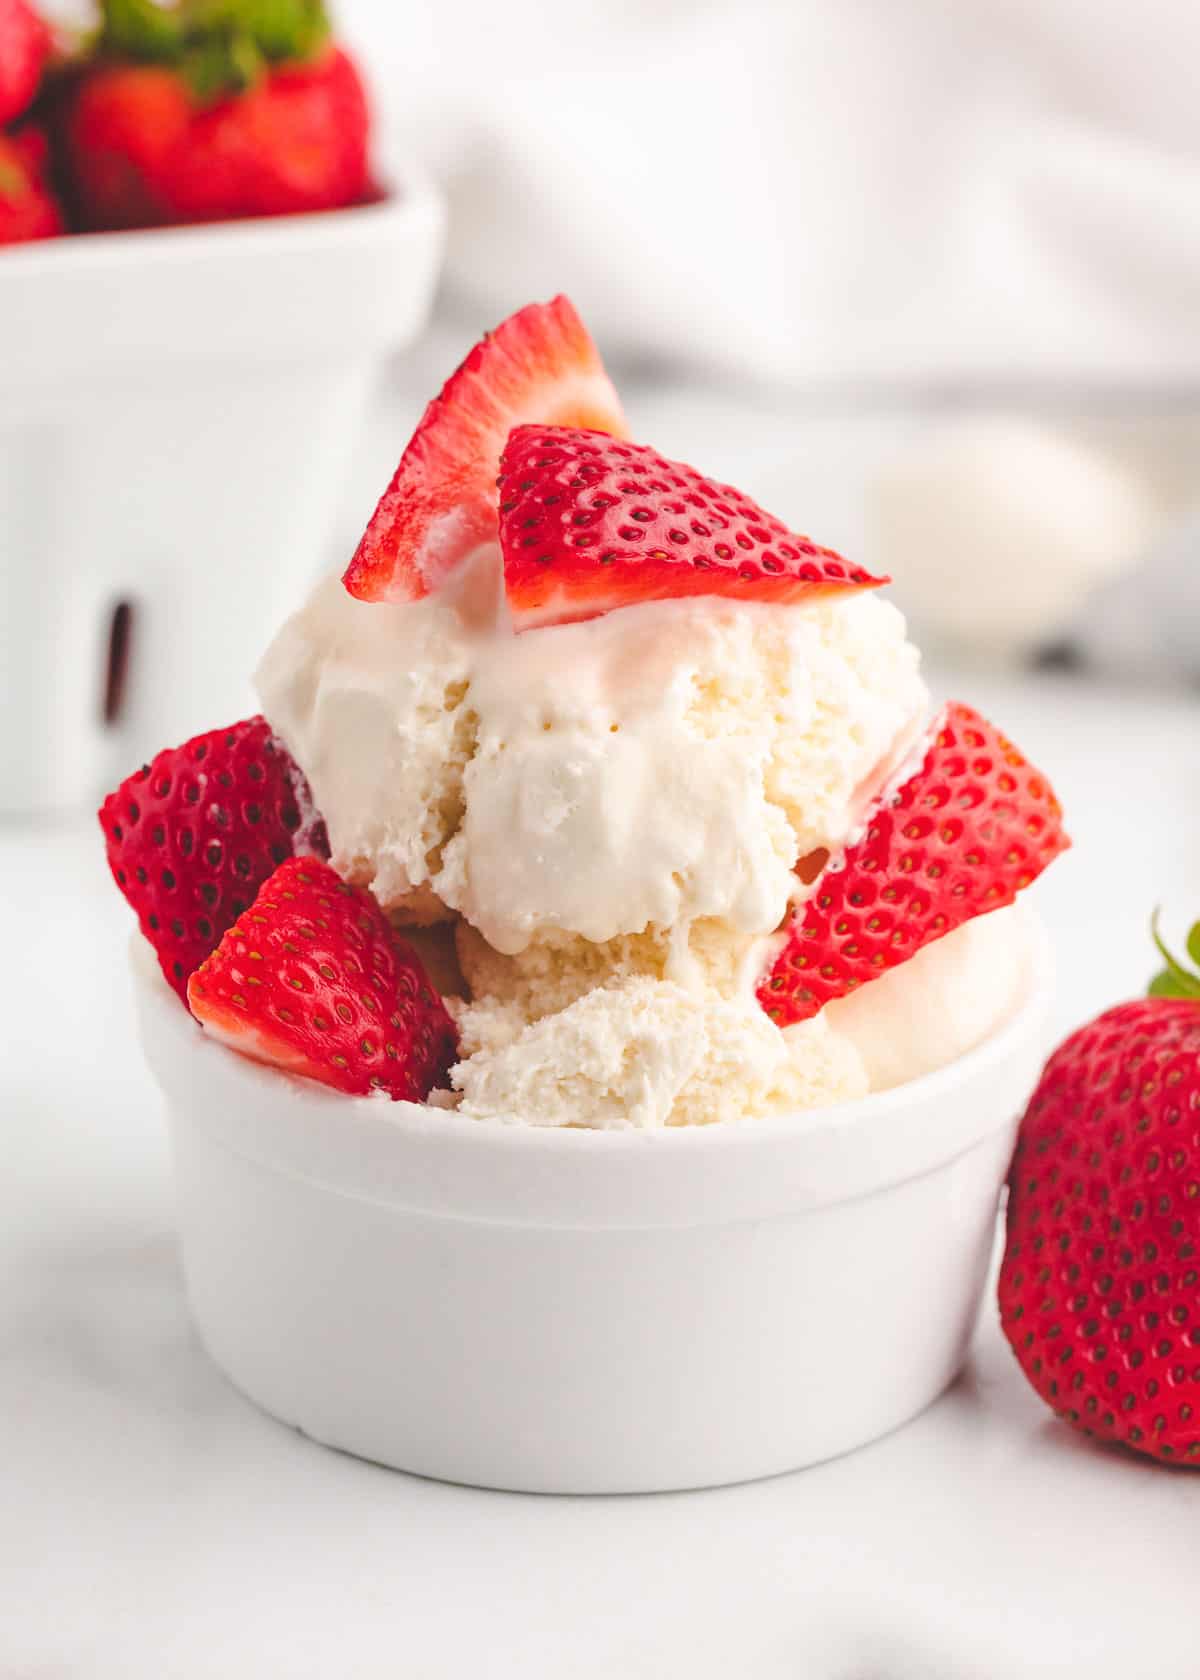 Vanilla ice cream and strawberries in white bowl.